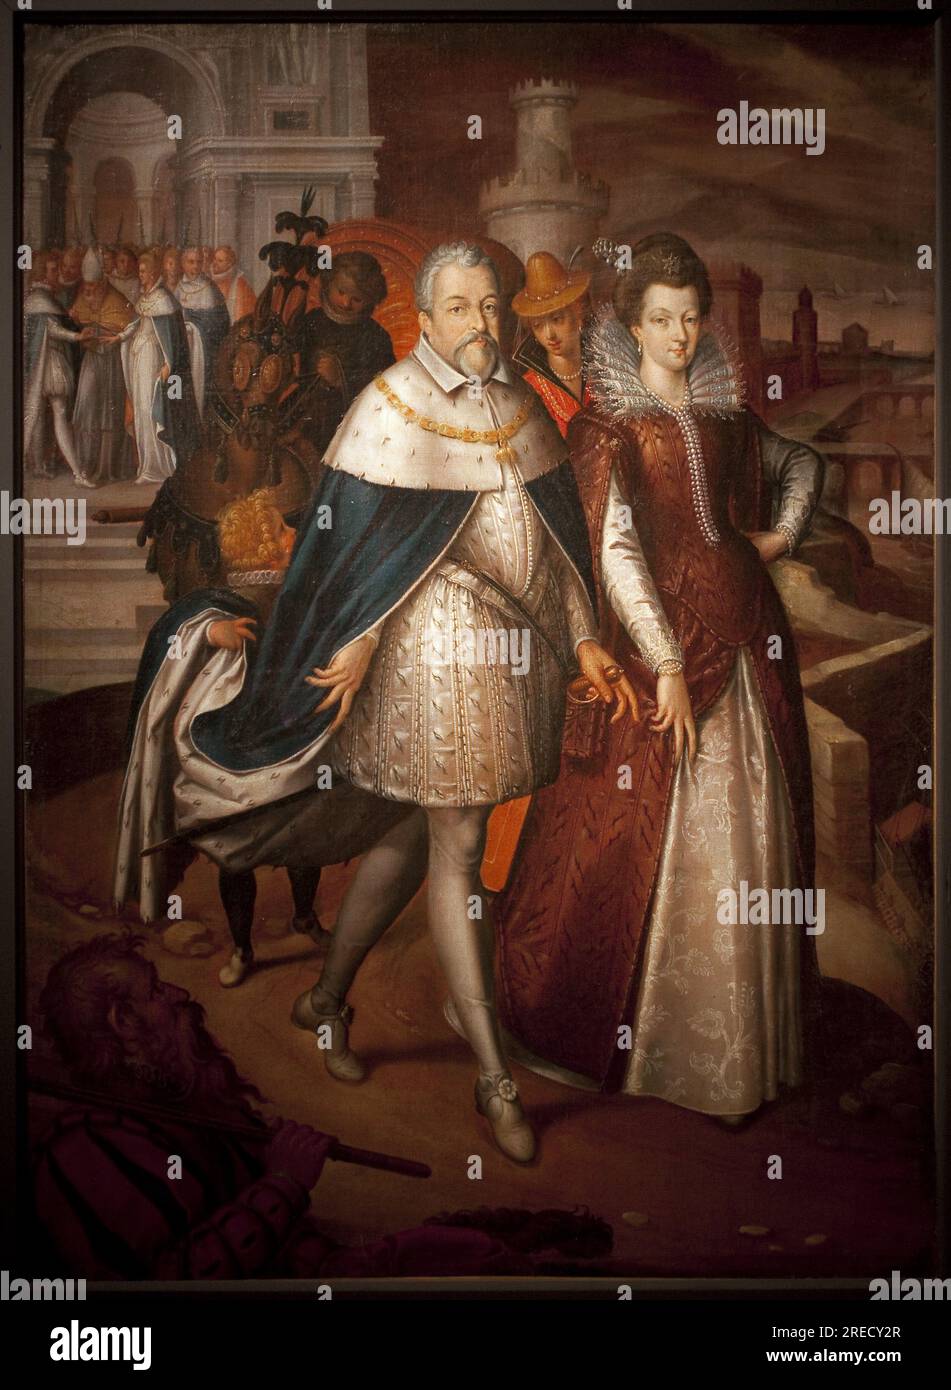 Portrait de Francois i de Medicis (1541-1587), Grand duc de Toscane et de sa fille Marie de Medicis (1575-1642), futura reine de France. Le duc a le collier de l'ordre de la Toison d'Or. Peinture de Nicolas Bollery (mort en 1630), huile sur toile, 17e siecle. Art francais. Musee de Cherbourg. Foto Stock